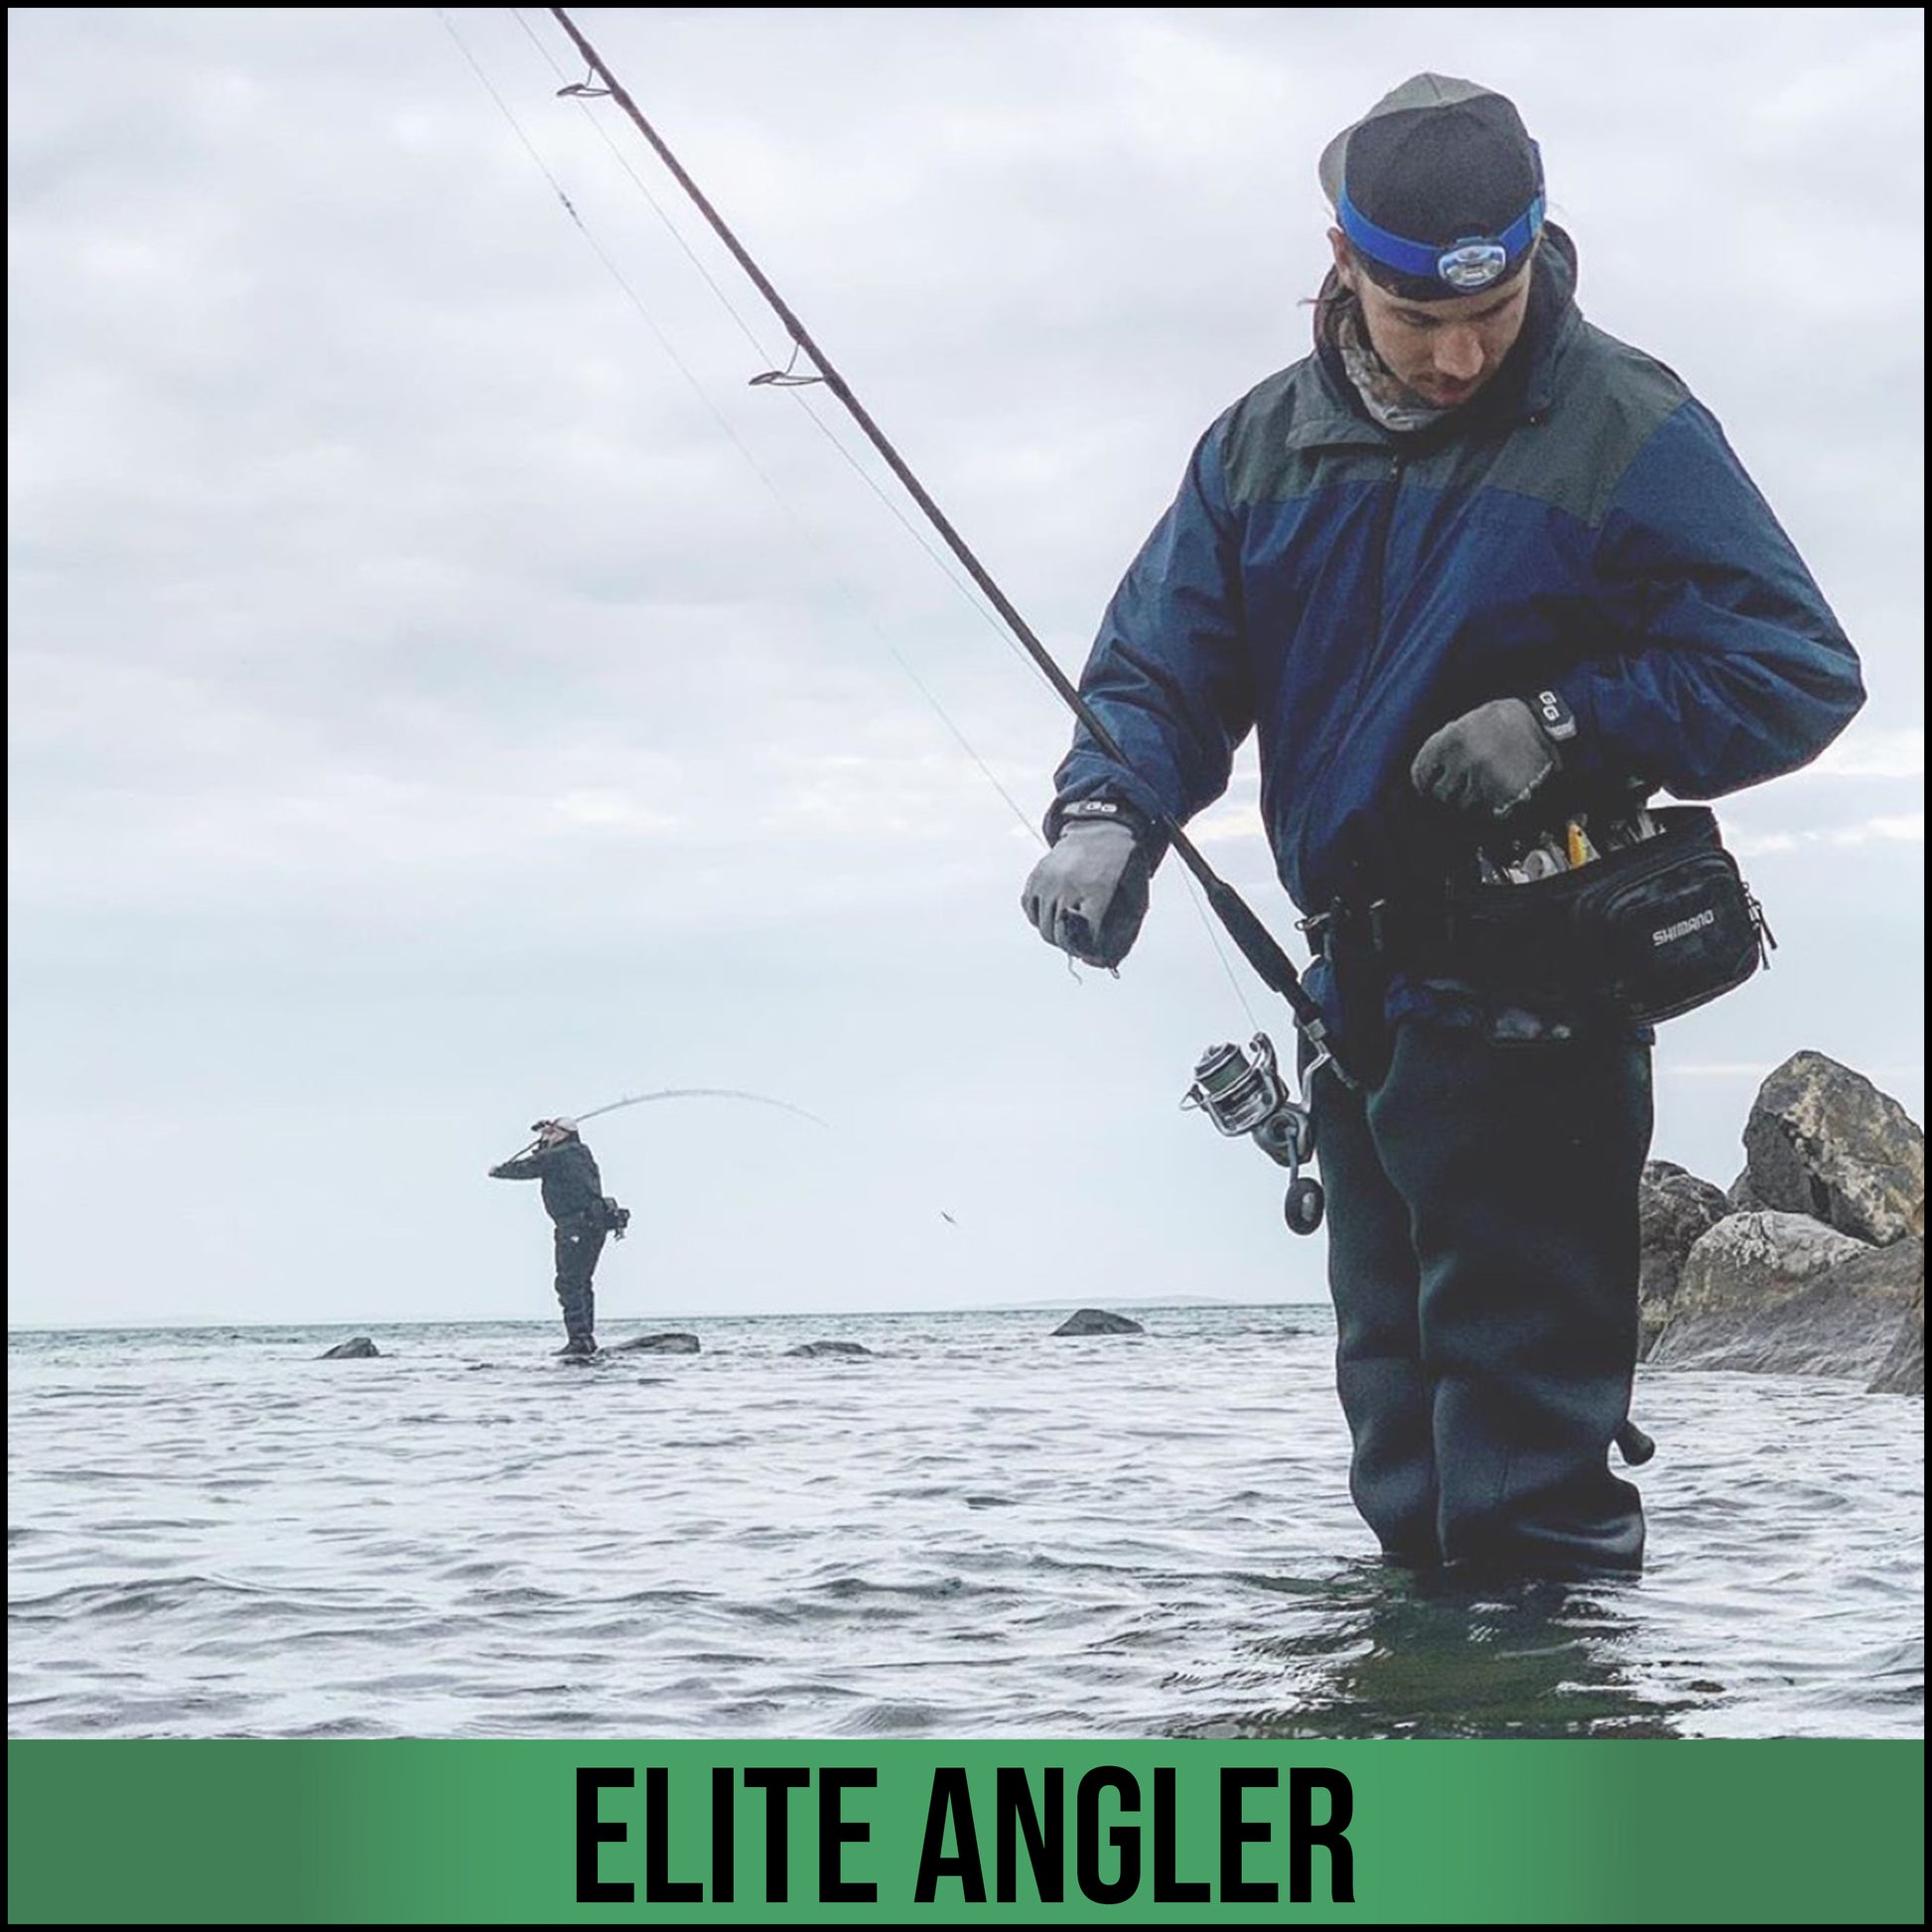 Elite Angler – Glacier Outdoor Products